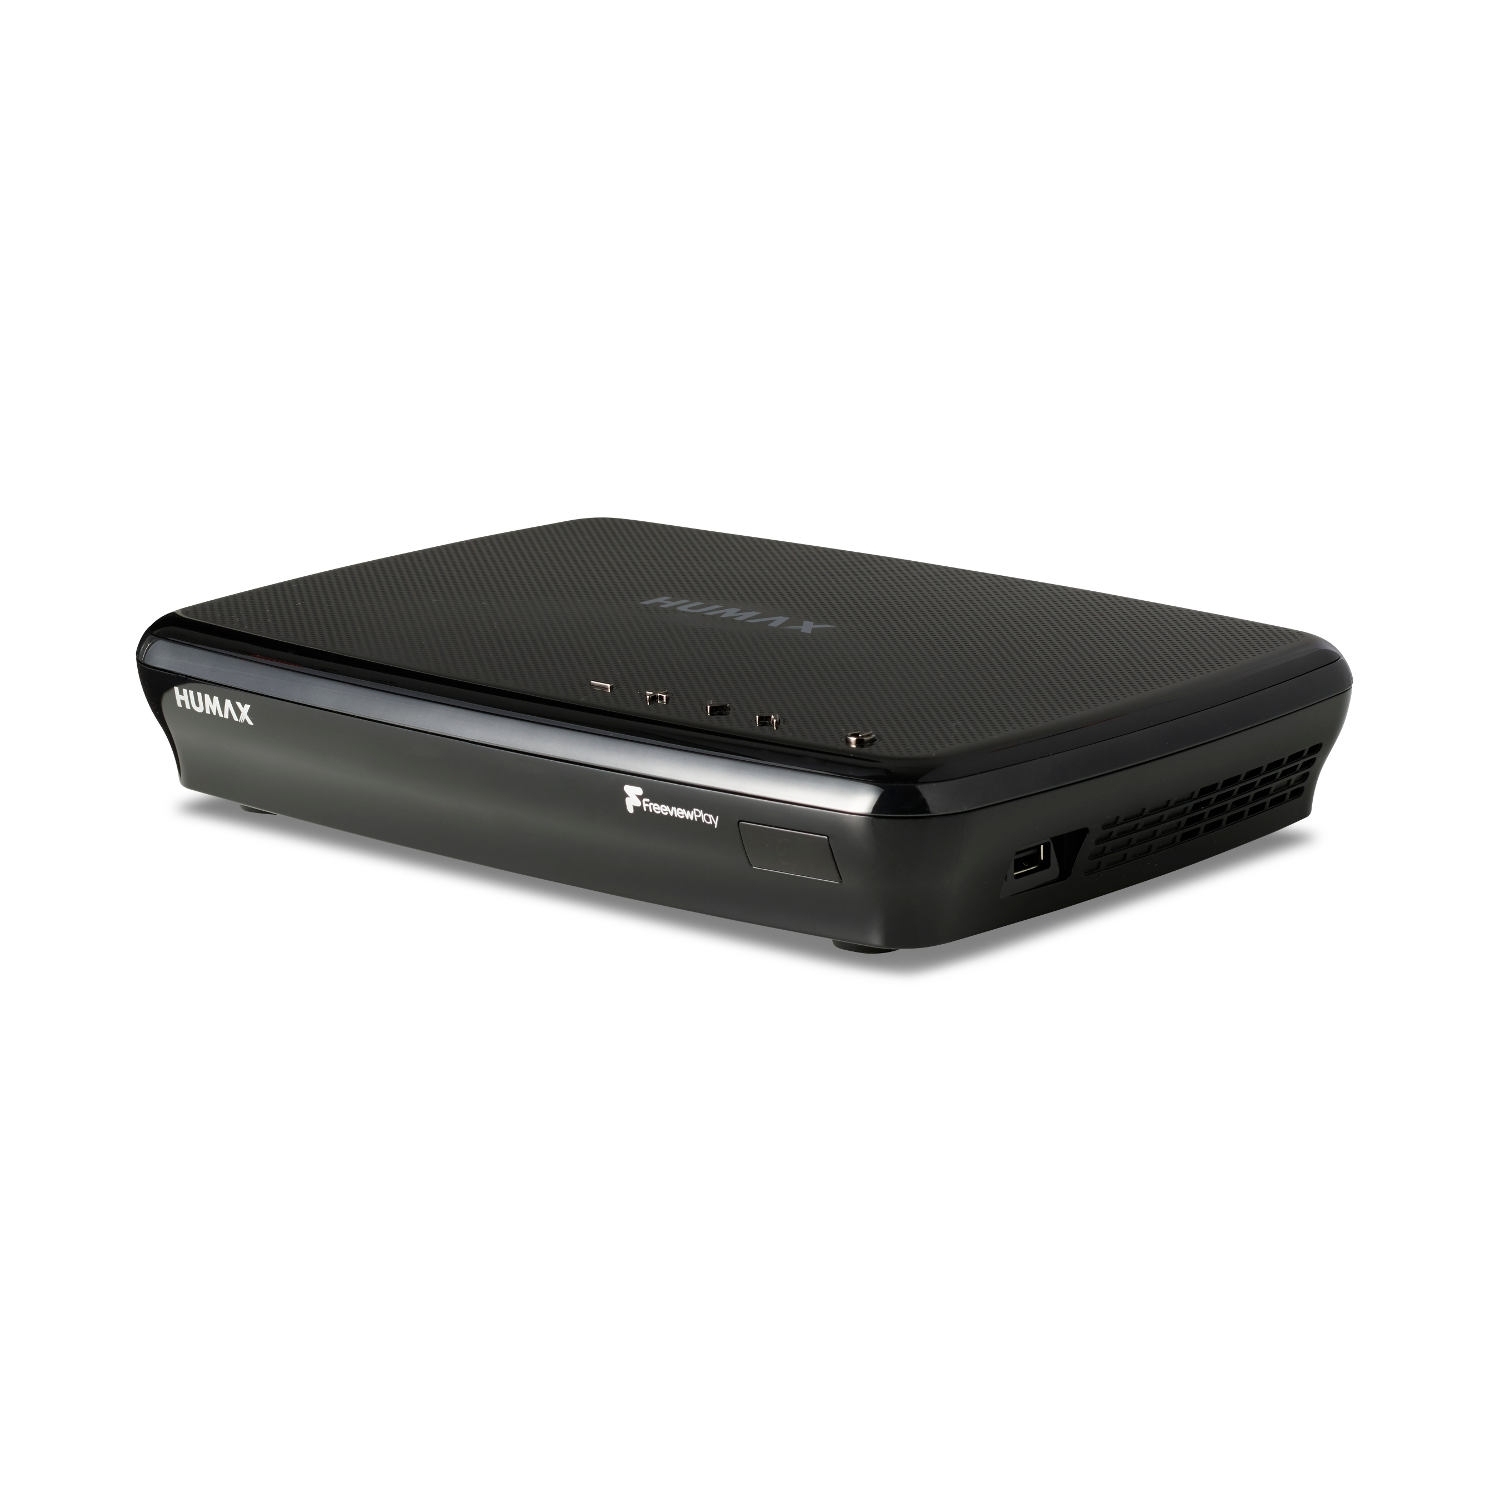 Humax FVP5000T 1TB Digital Video Recorder - 1 TB HDD-Freeview-HD-Smart- Black - 0